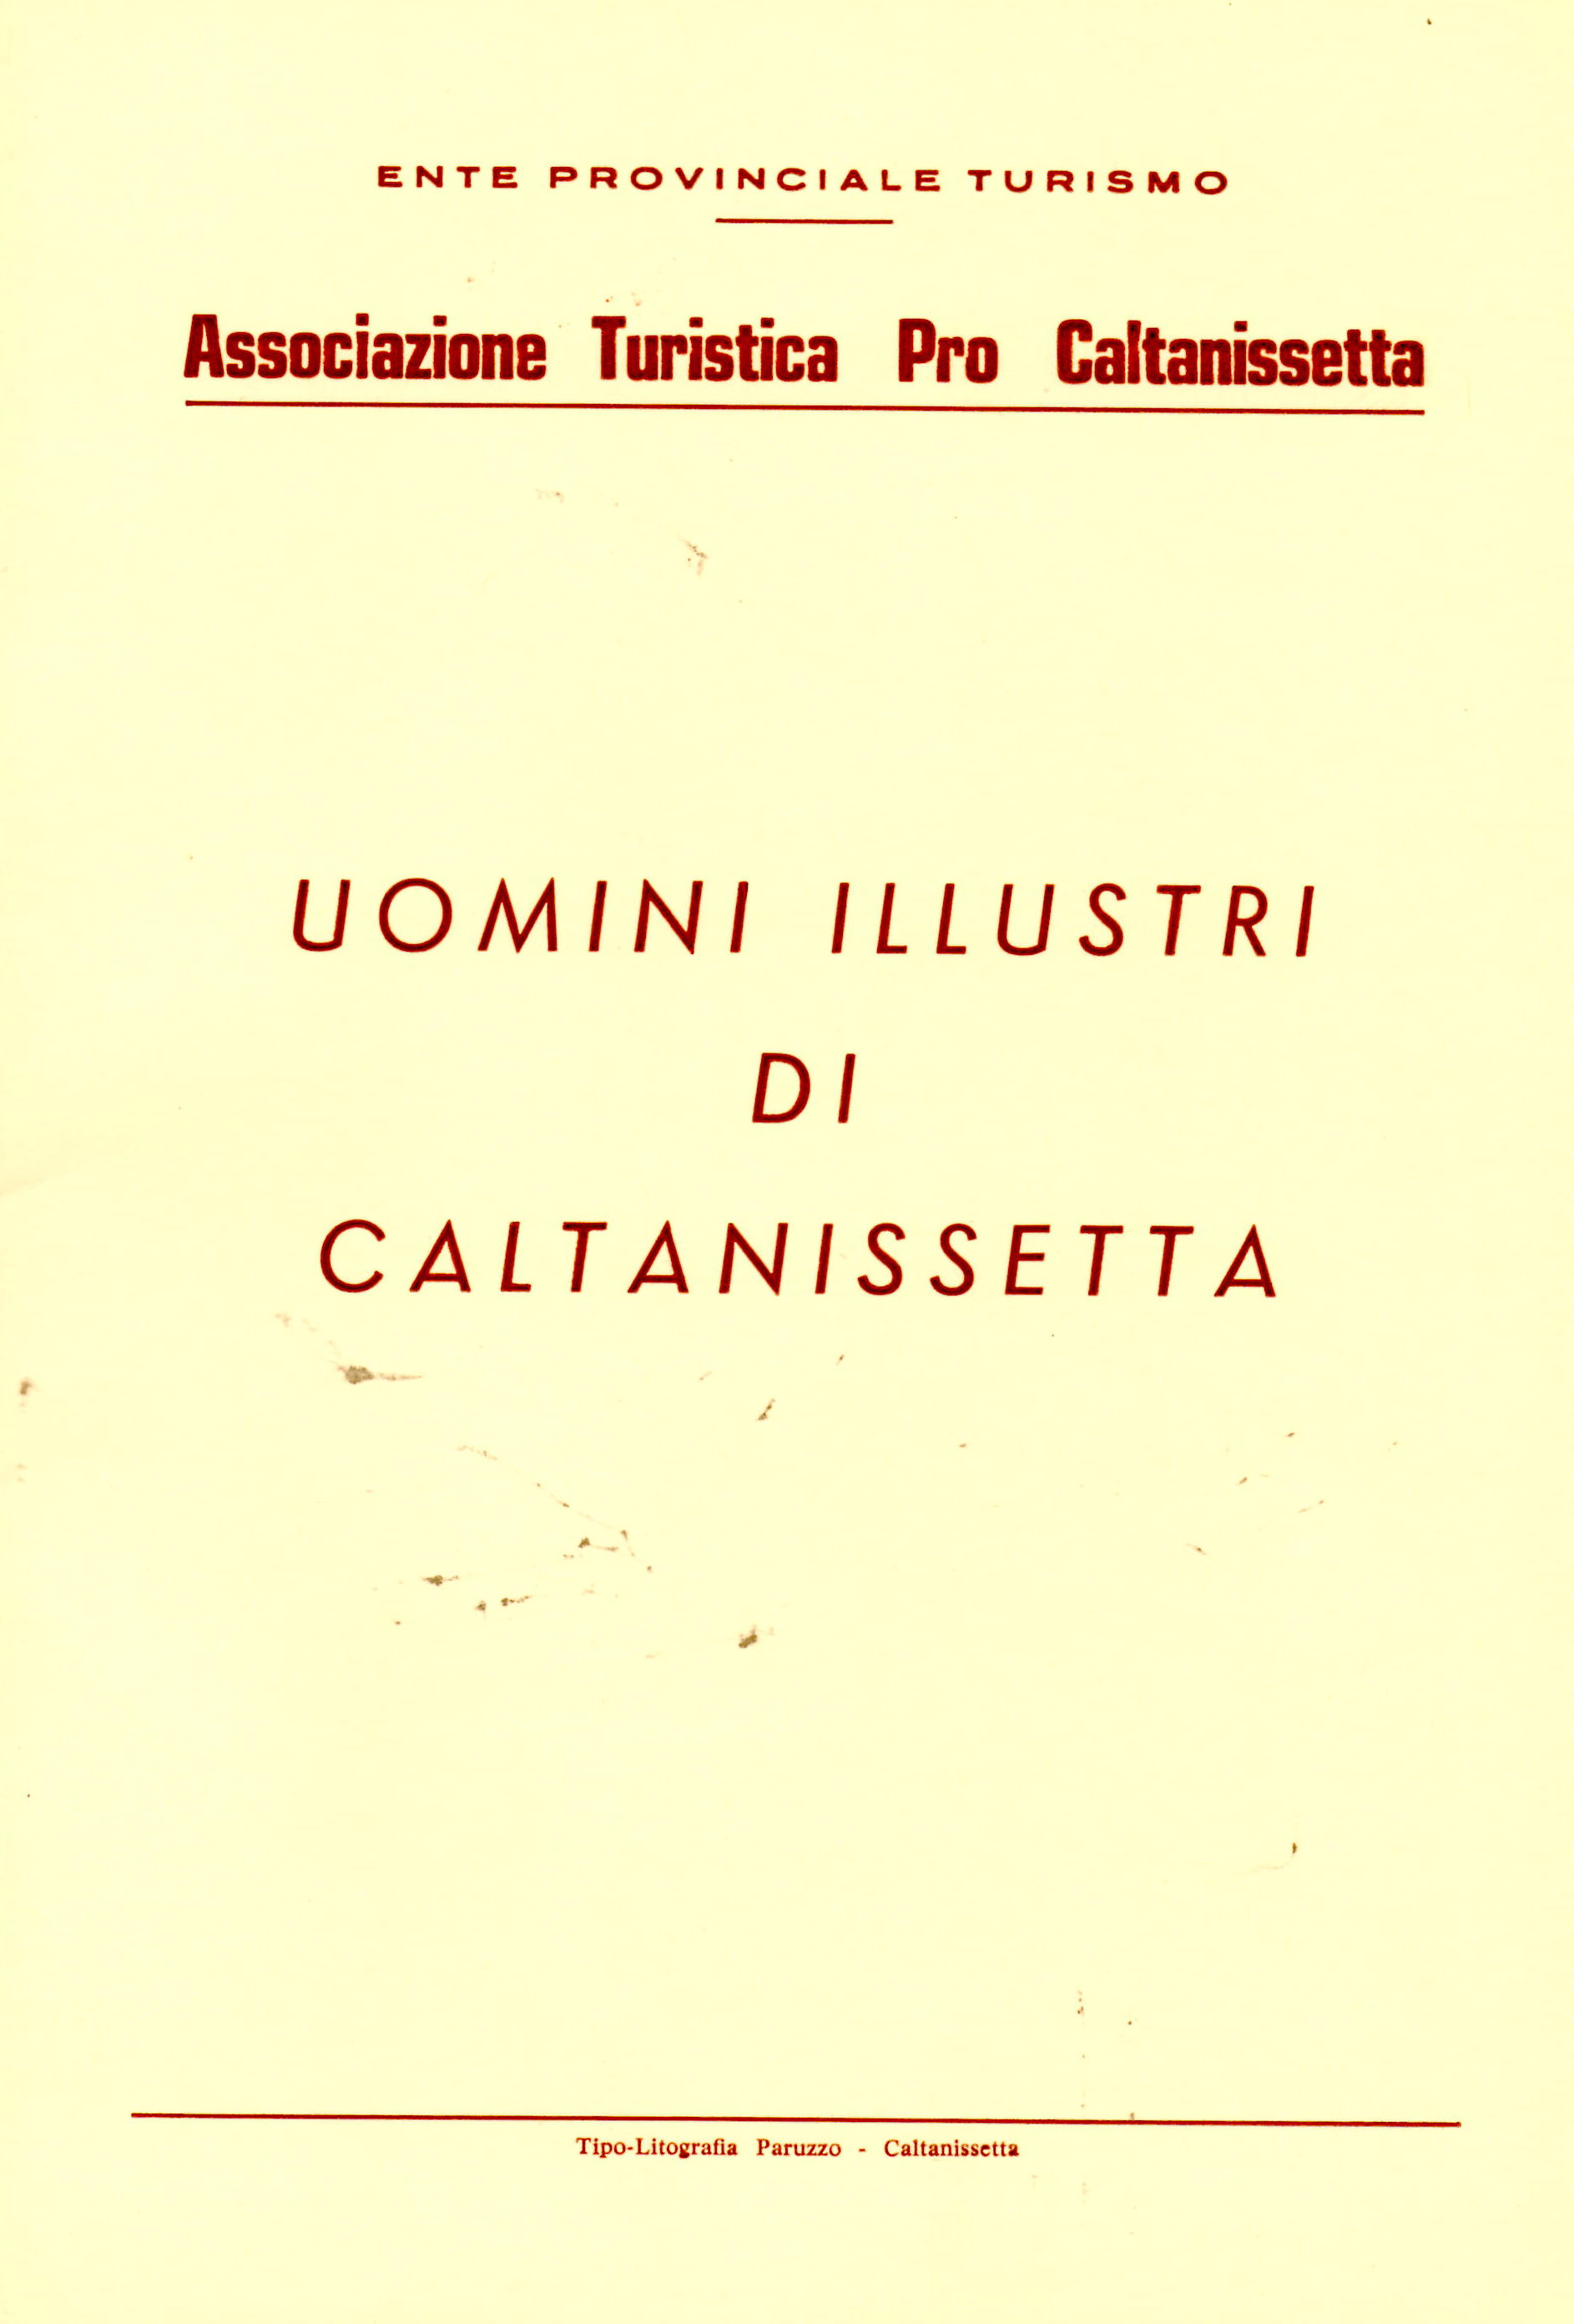 Caltanissetta - 1979.jpg